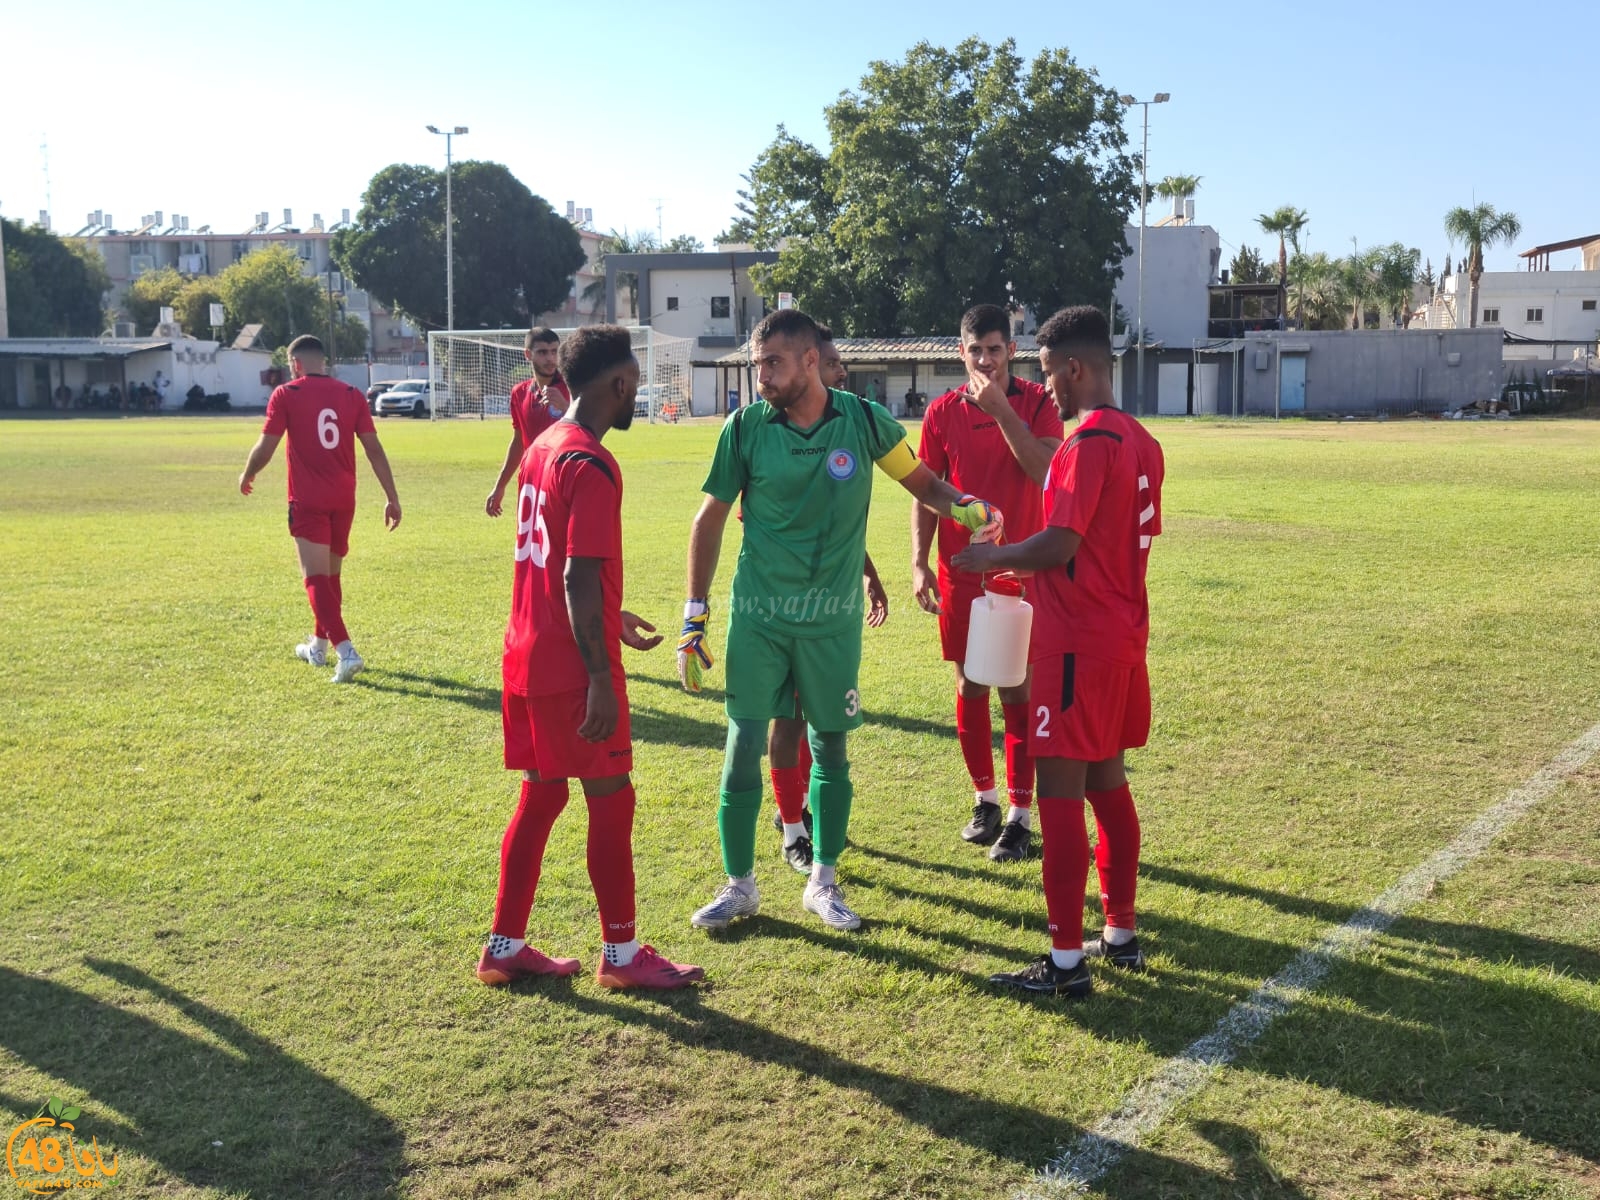 فوز فريق أبناء يافا في أول مباراة للموسم الكروي الجديد 